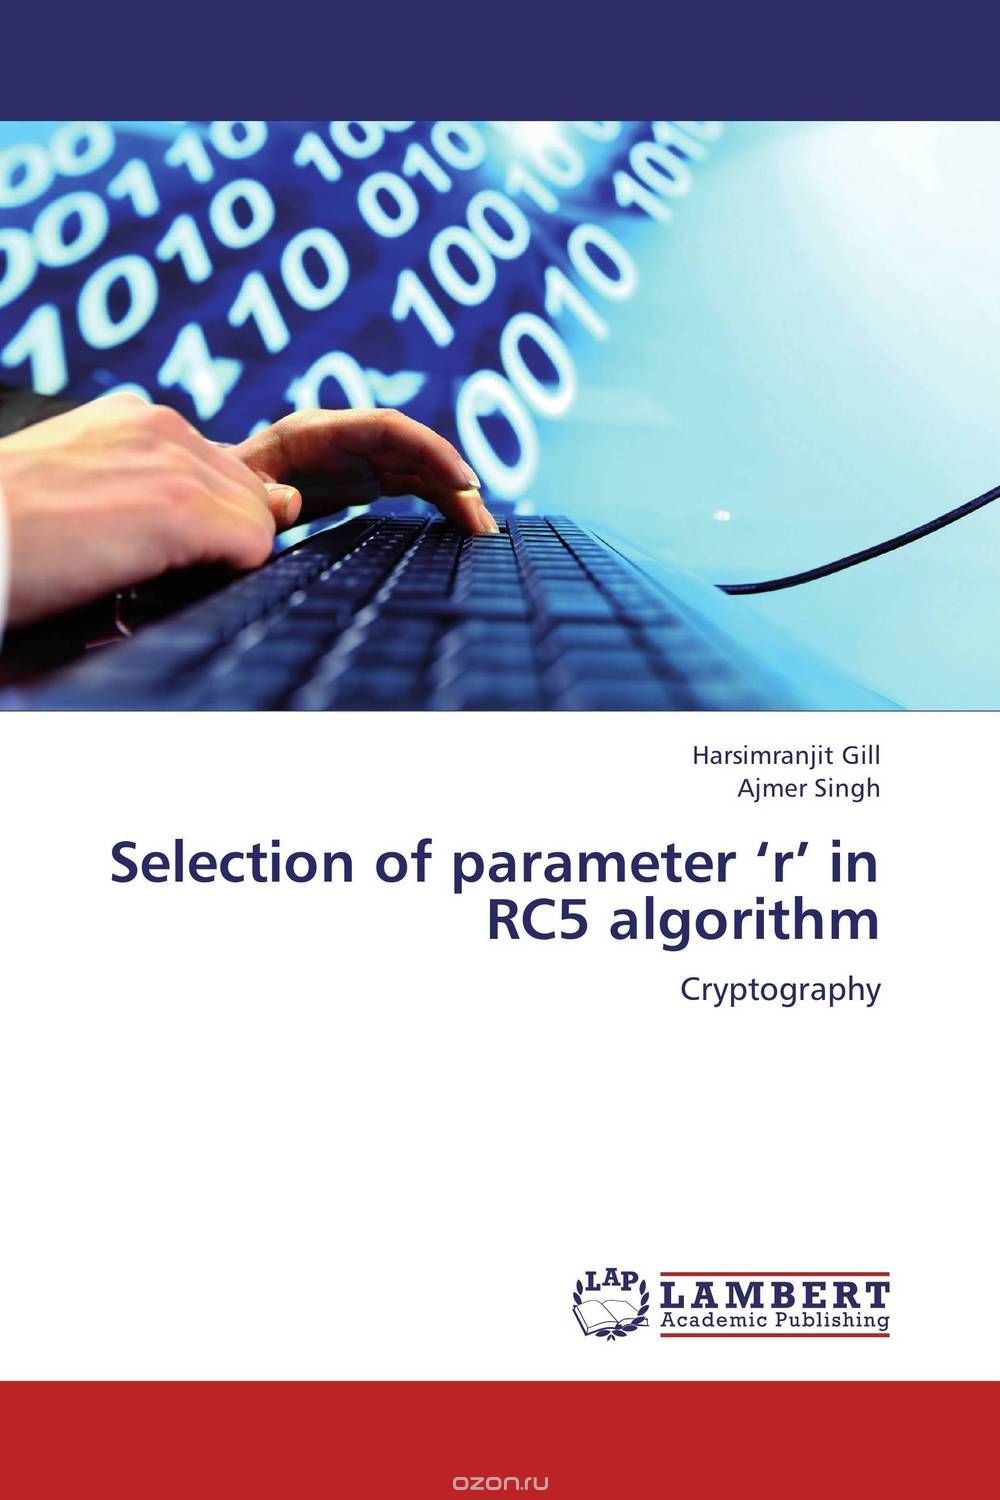 Скачать книгу "Selection of parameter ‘r’ in RC5 algorithm"